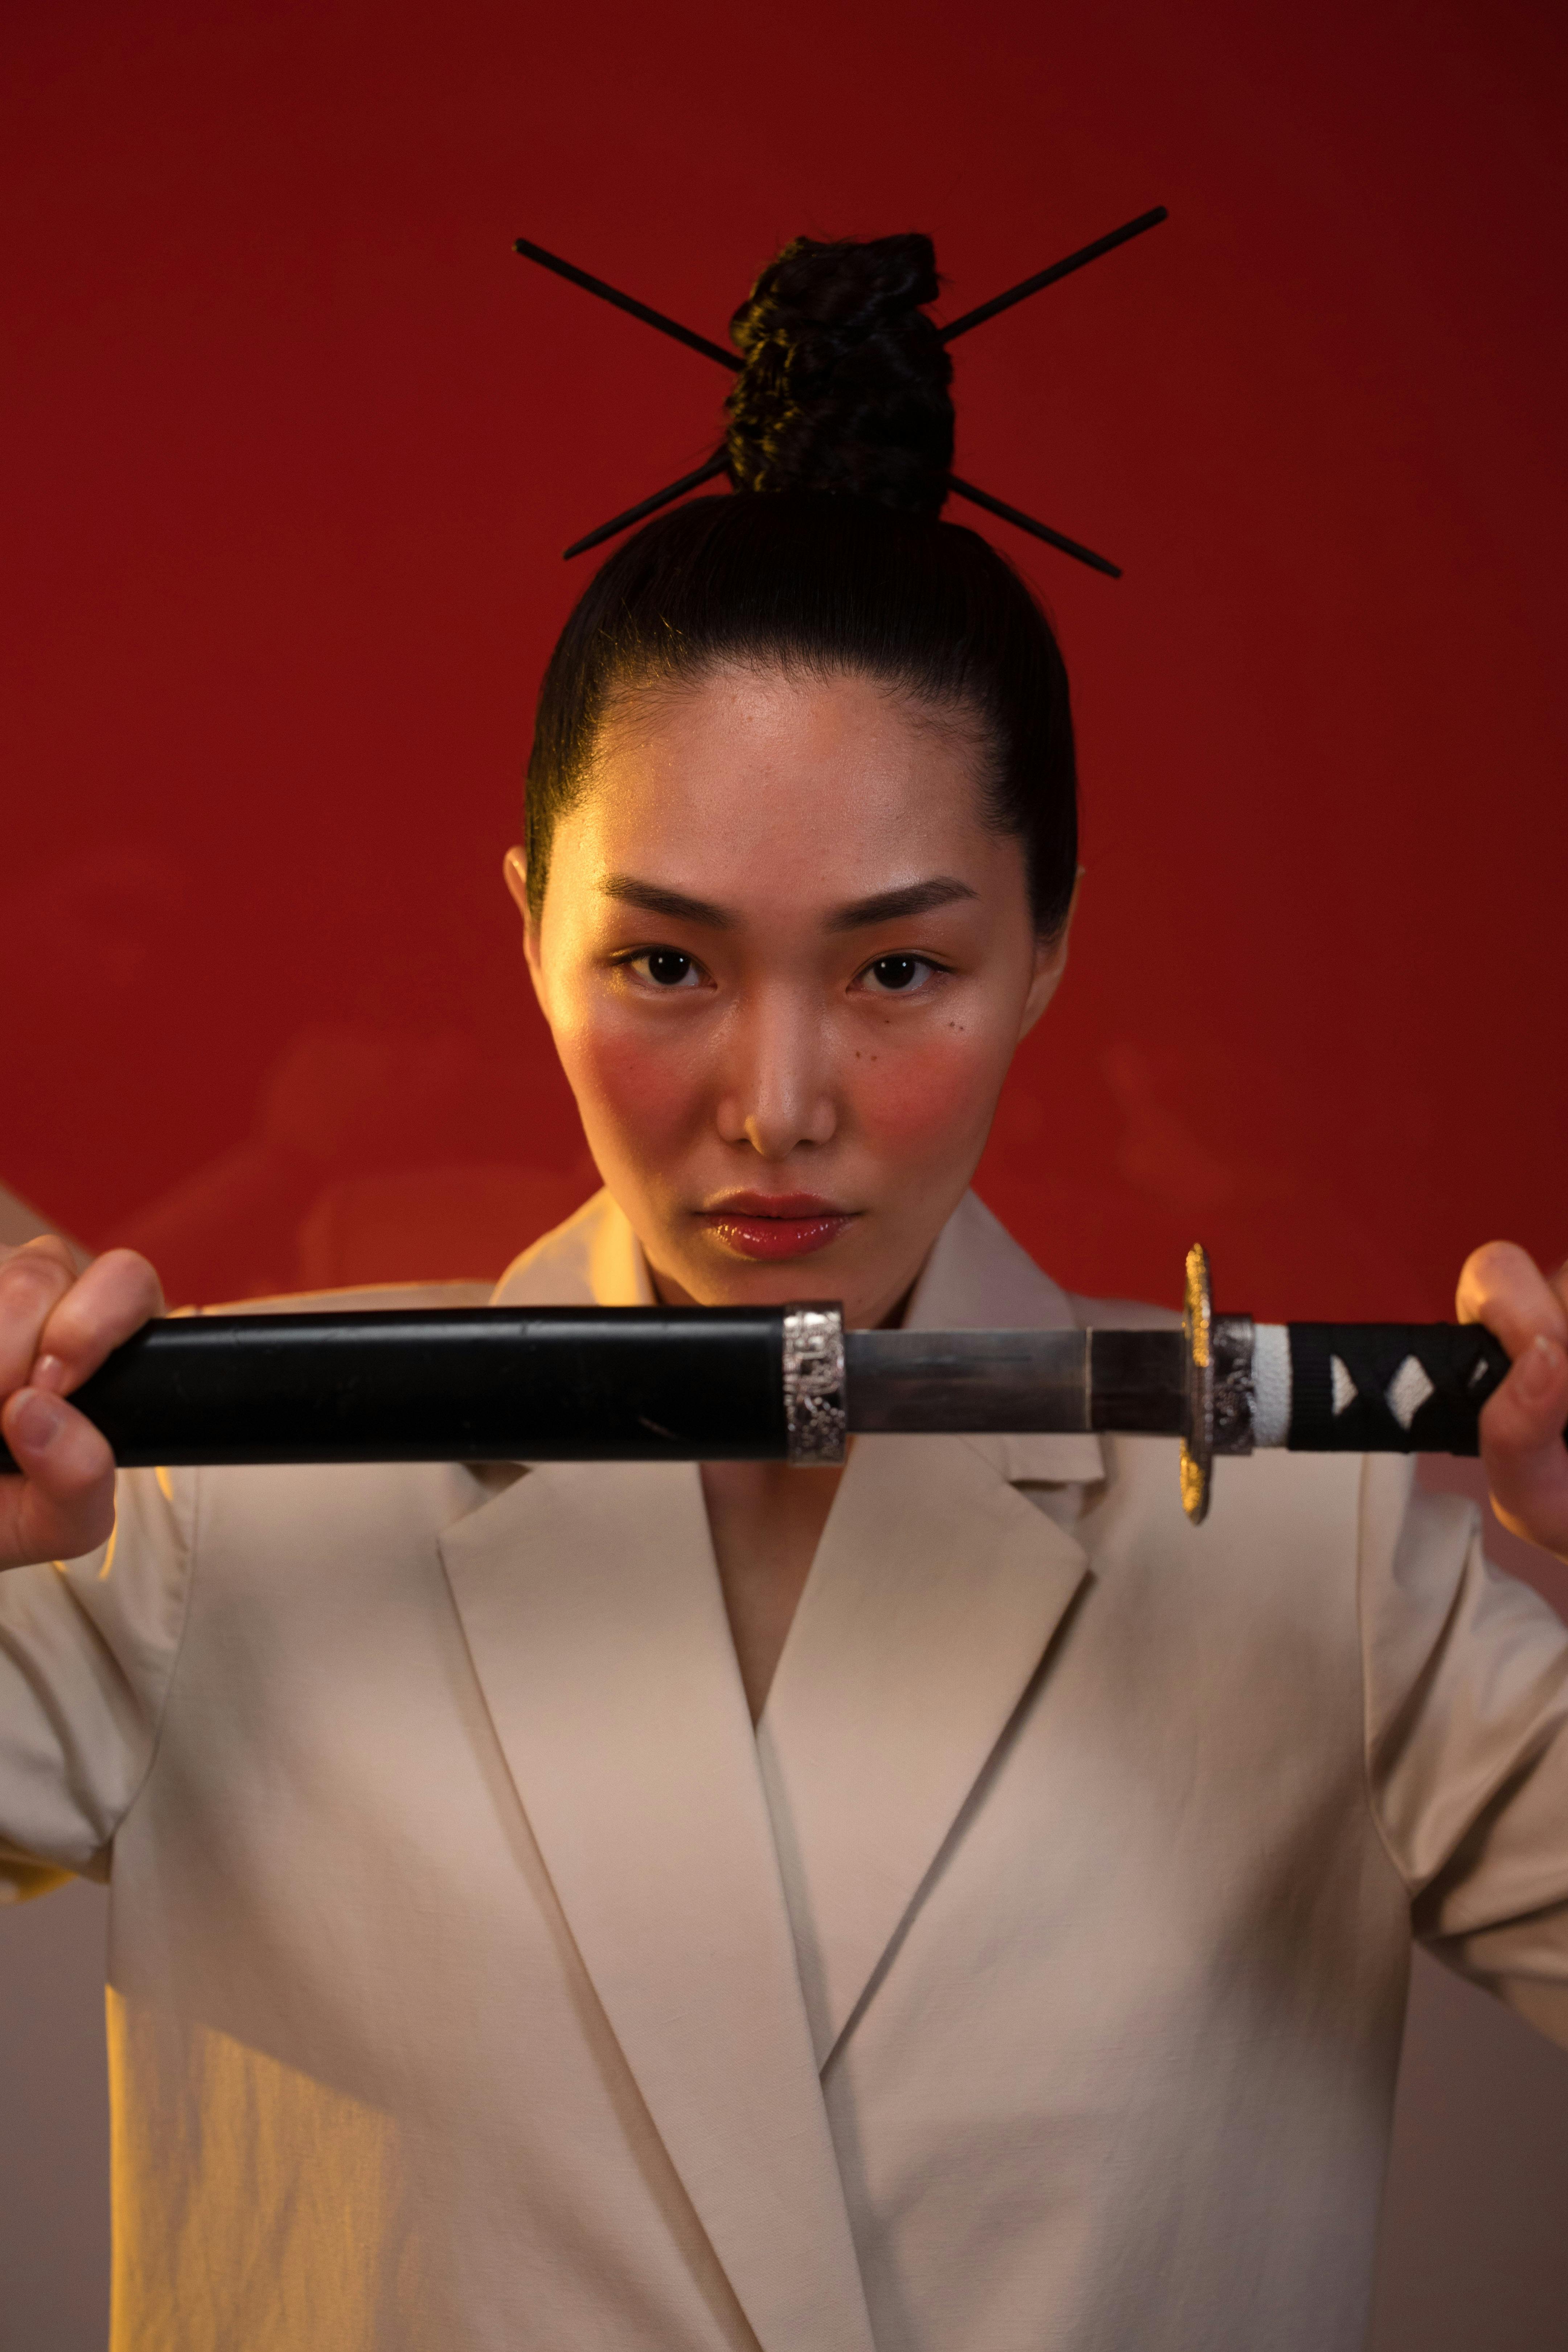 Samurai Sword Photos, Download The BEST Free Samurai Sword Stock Photos &  HD Images